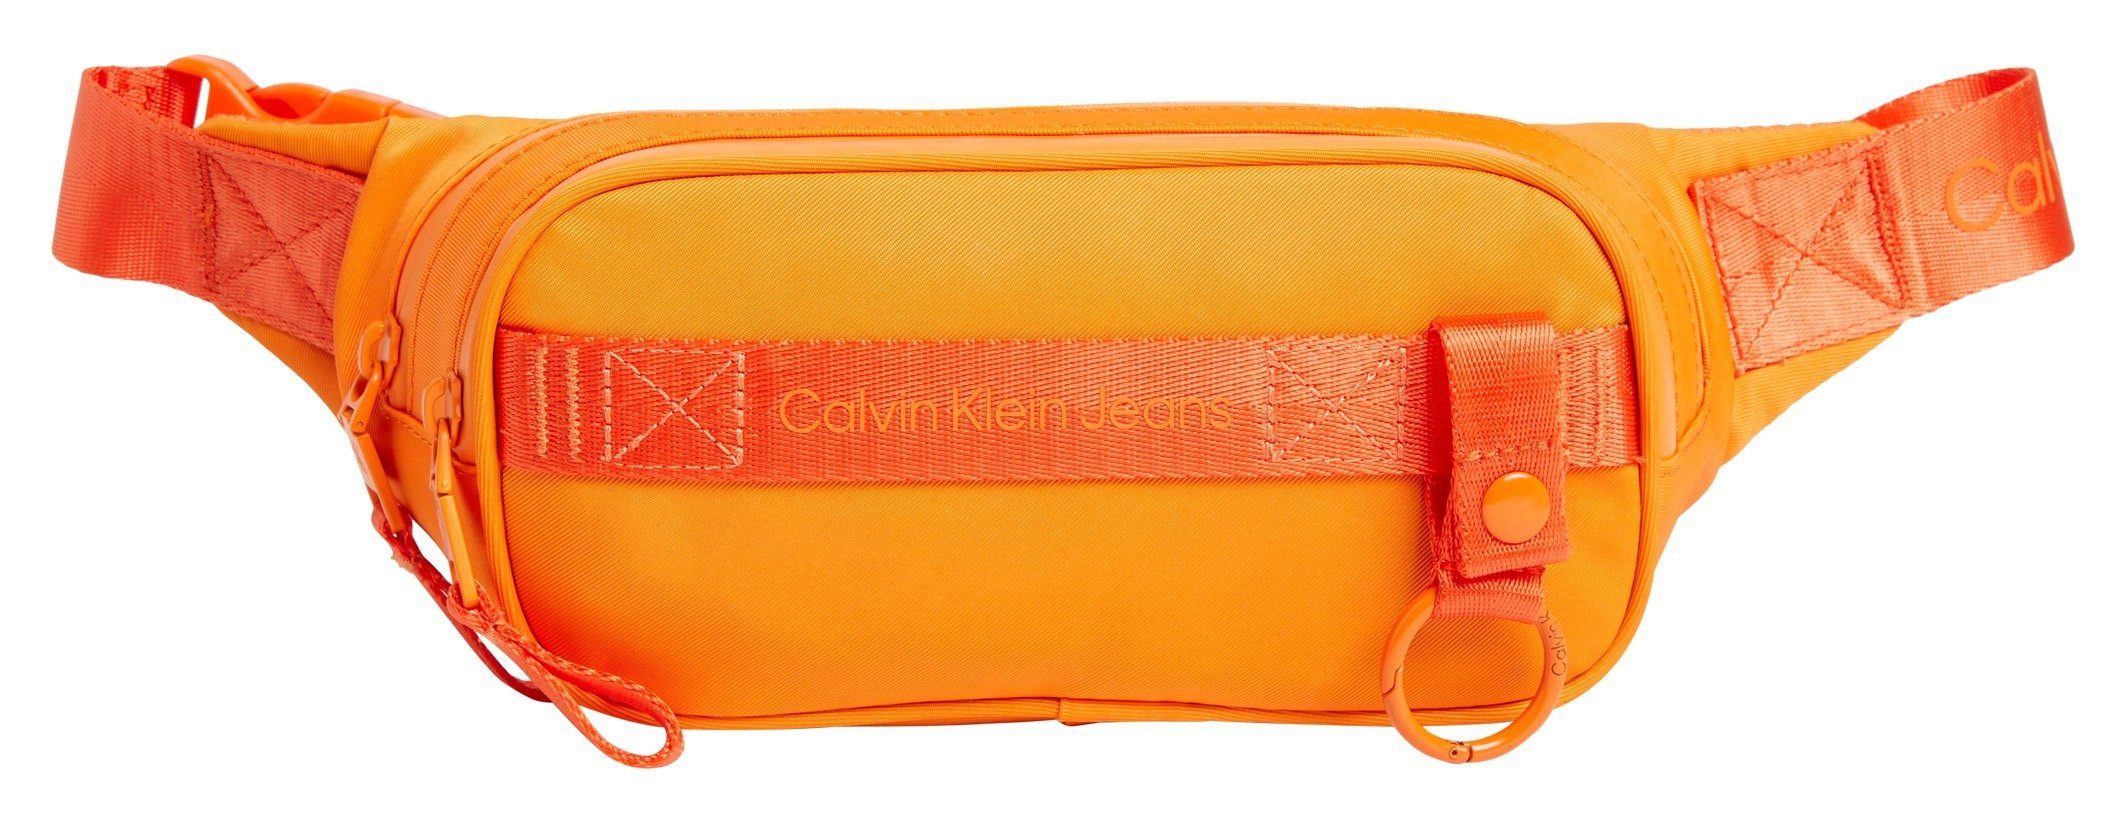 Calvin Klein Jeans Reißverschluss-Vortasche mit WAISTBAG35 SQ. NYLON, Bauchtasche ULTRALIGHT